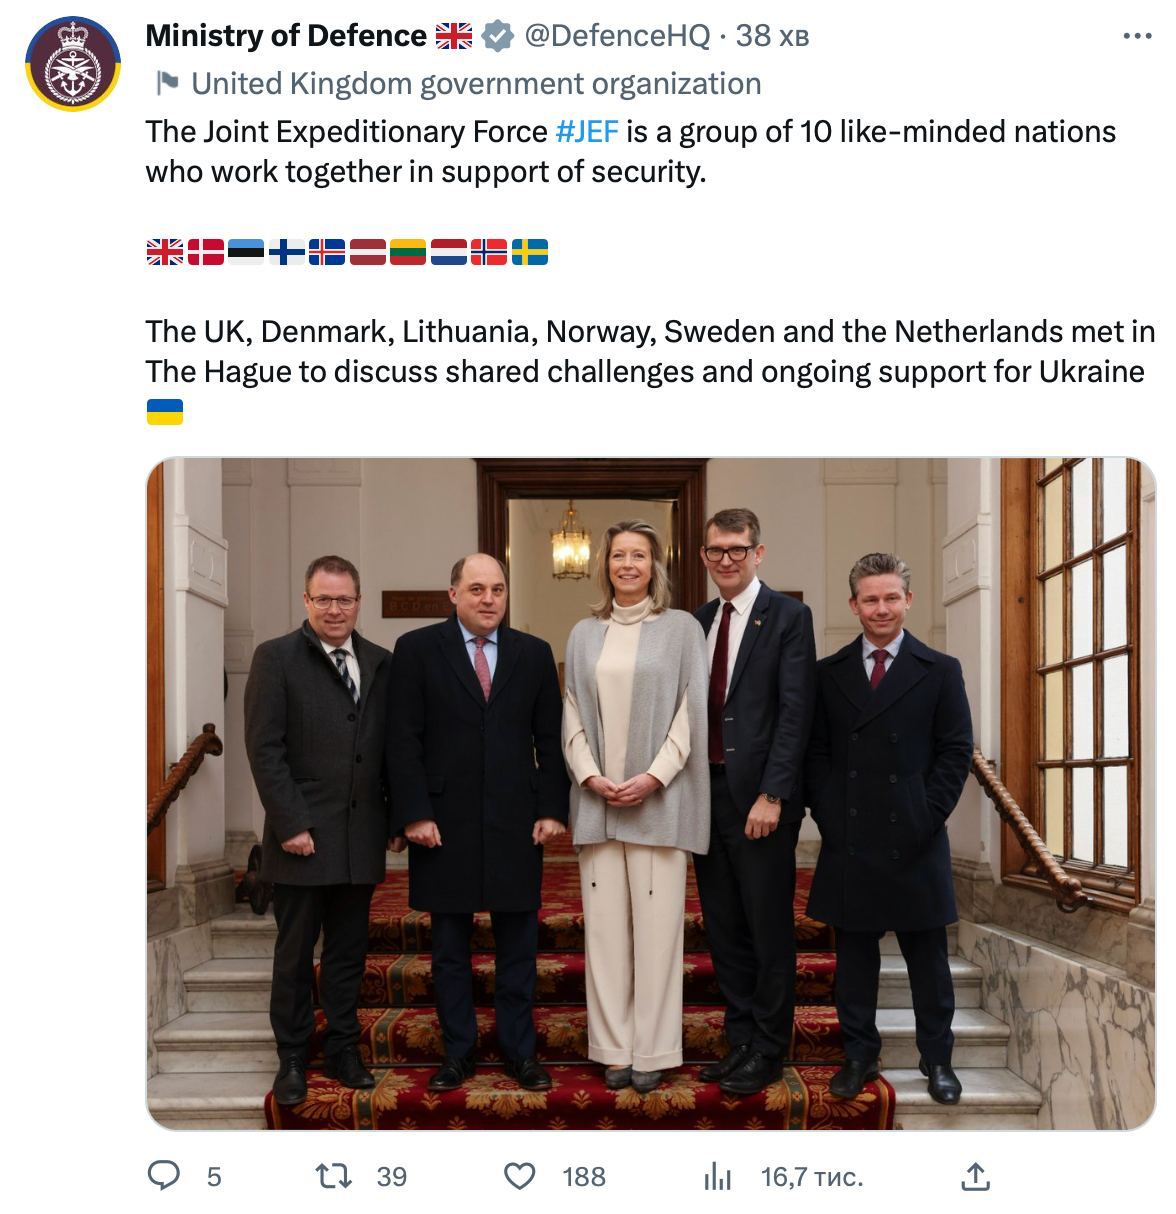 Представители Великобритании, Дании, Литвы, Норвегии, Швеции и Нидерландов встретились в Гааге, чтобы обсудить поддержку Украины